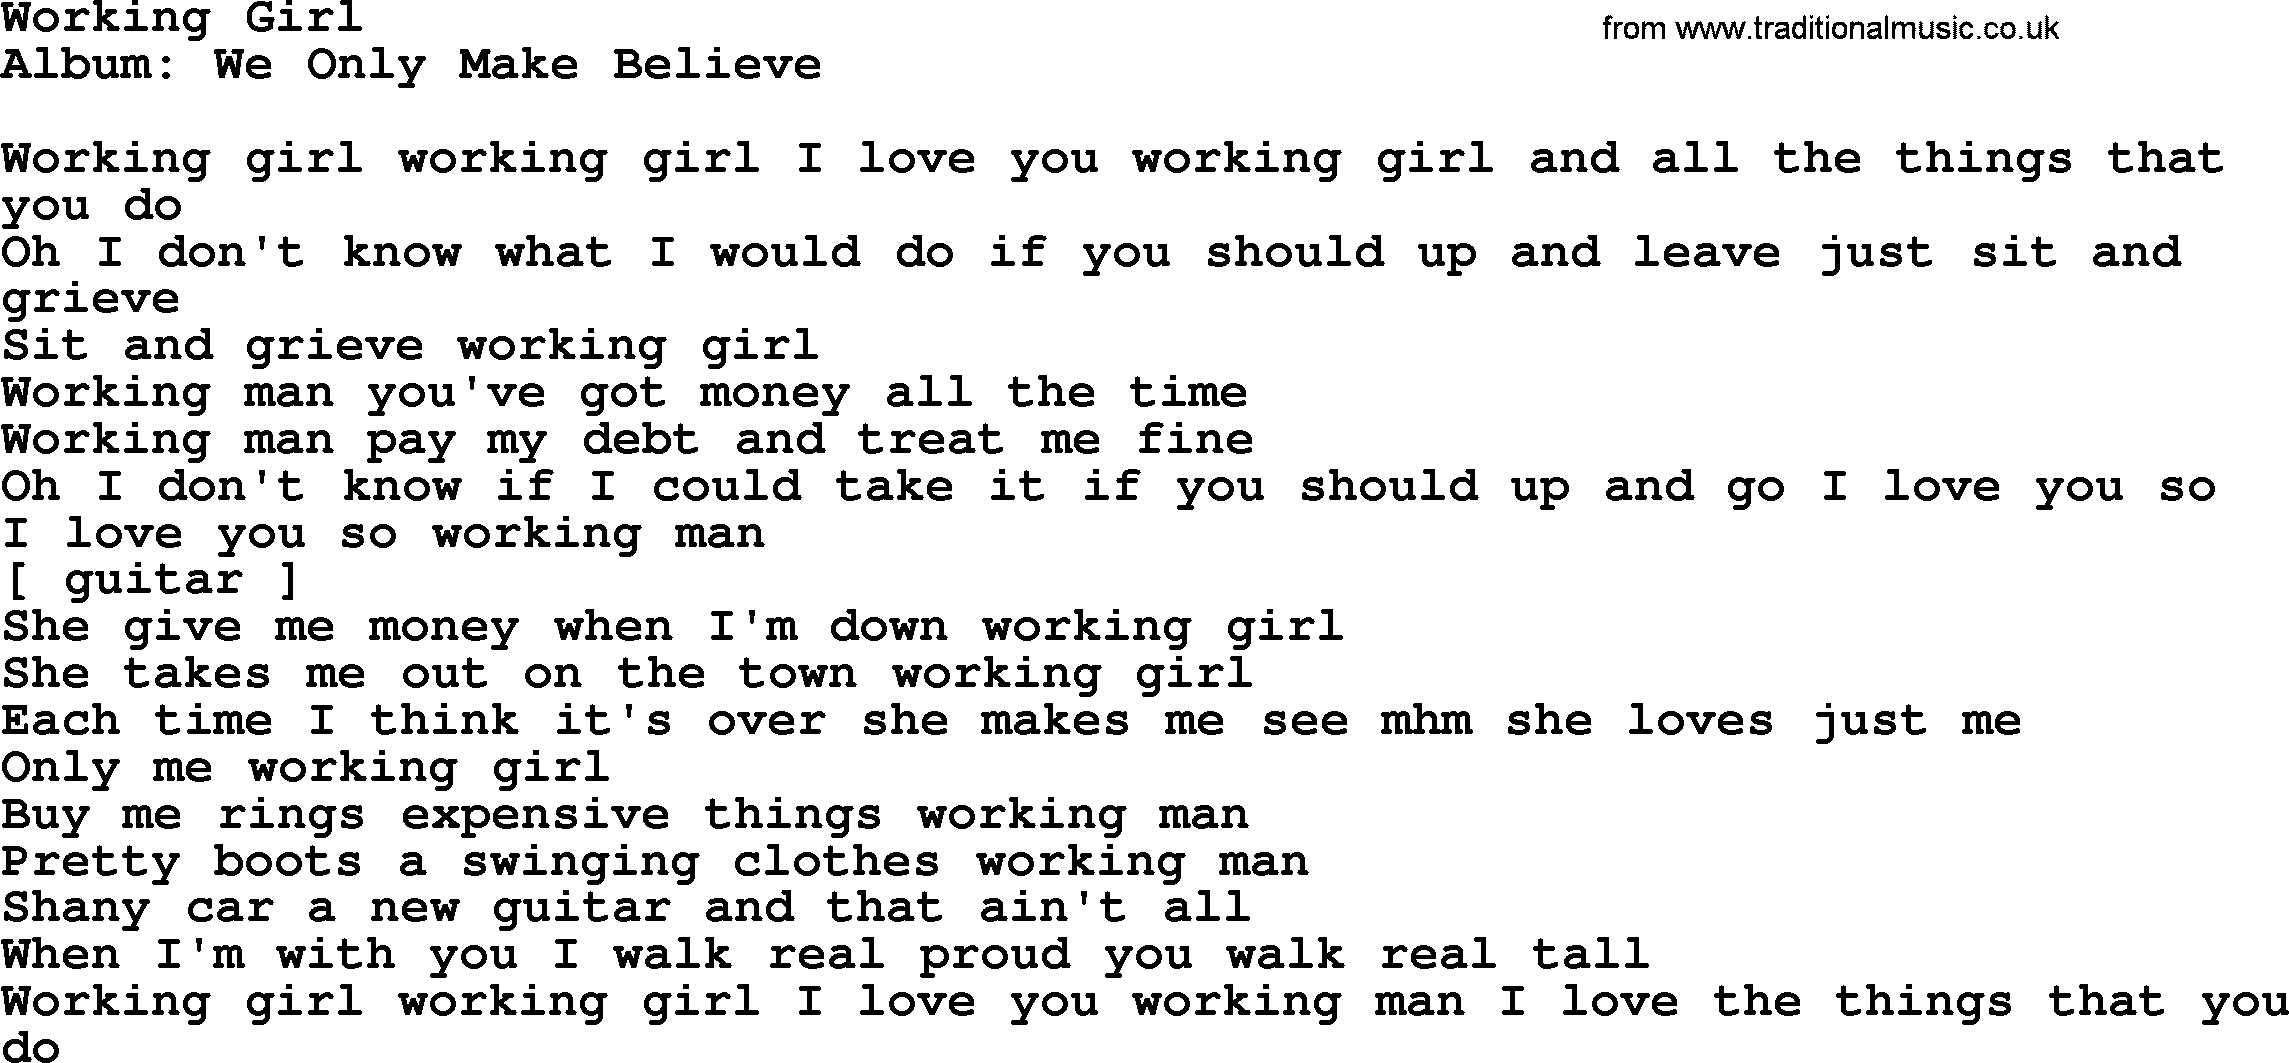 Loretta Lynn song: Working Girl lyrics